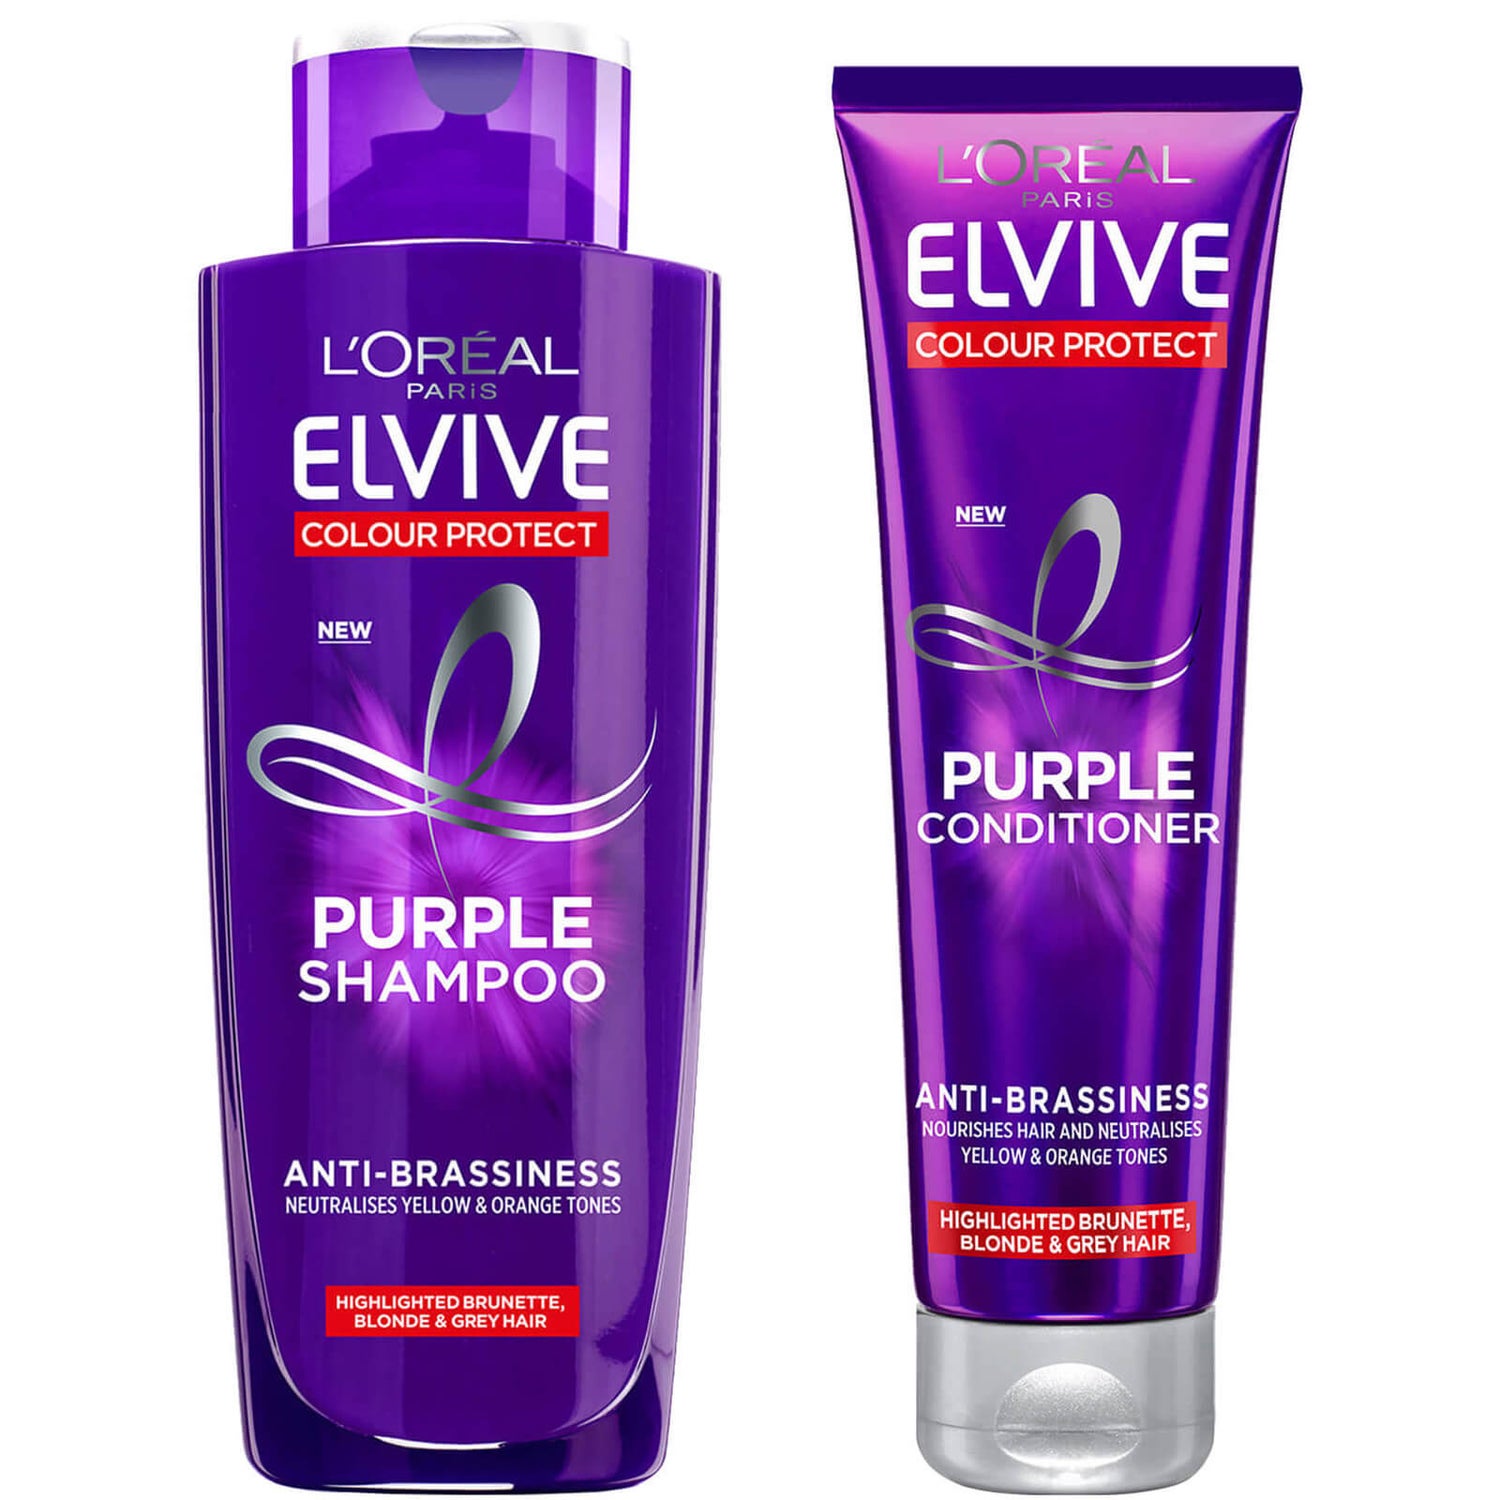 L'Oréal Paris Elvive Colour Protect Anti-Brassiness Purple Shampoo and Conditioner Set -